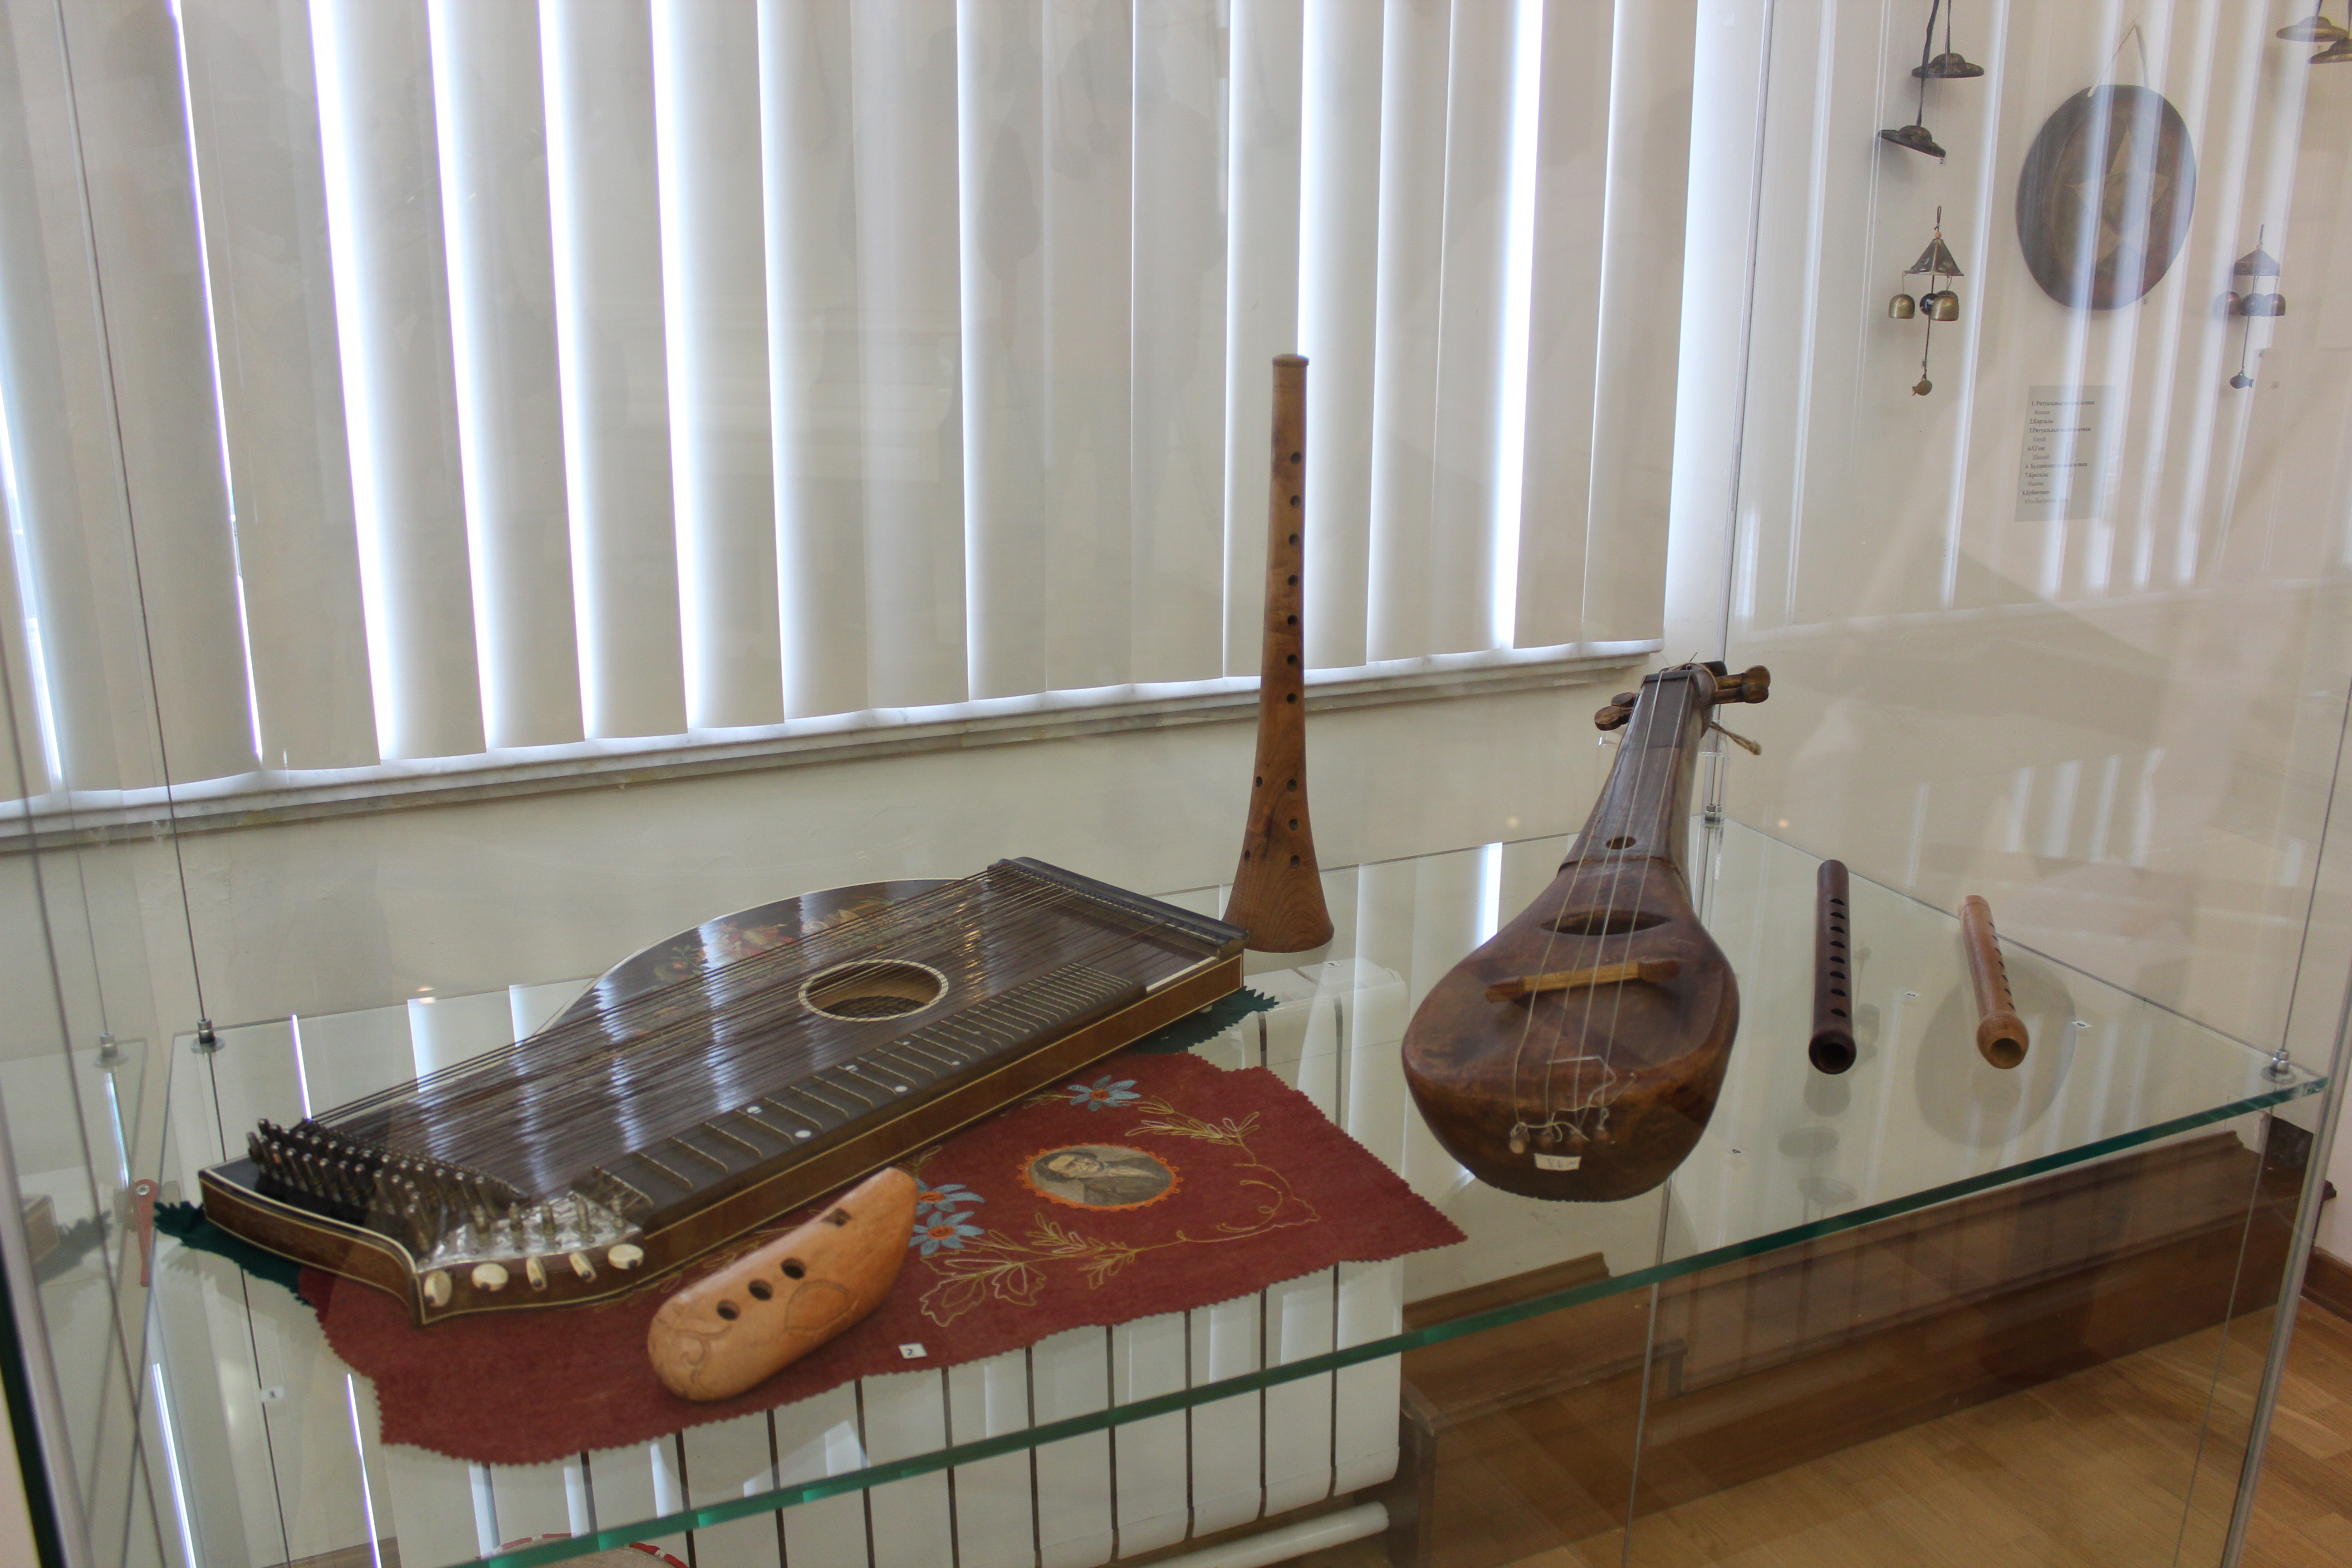 Инструменты татаров